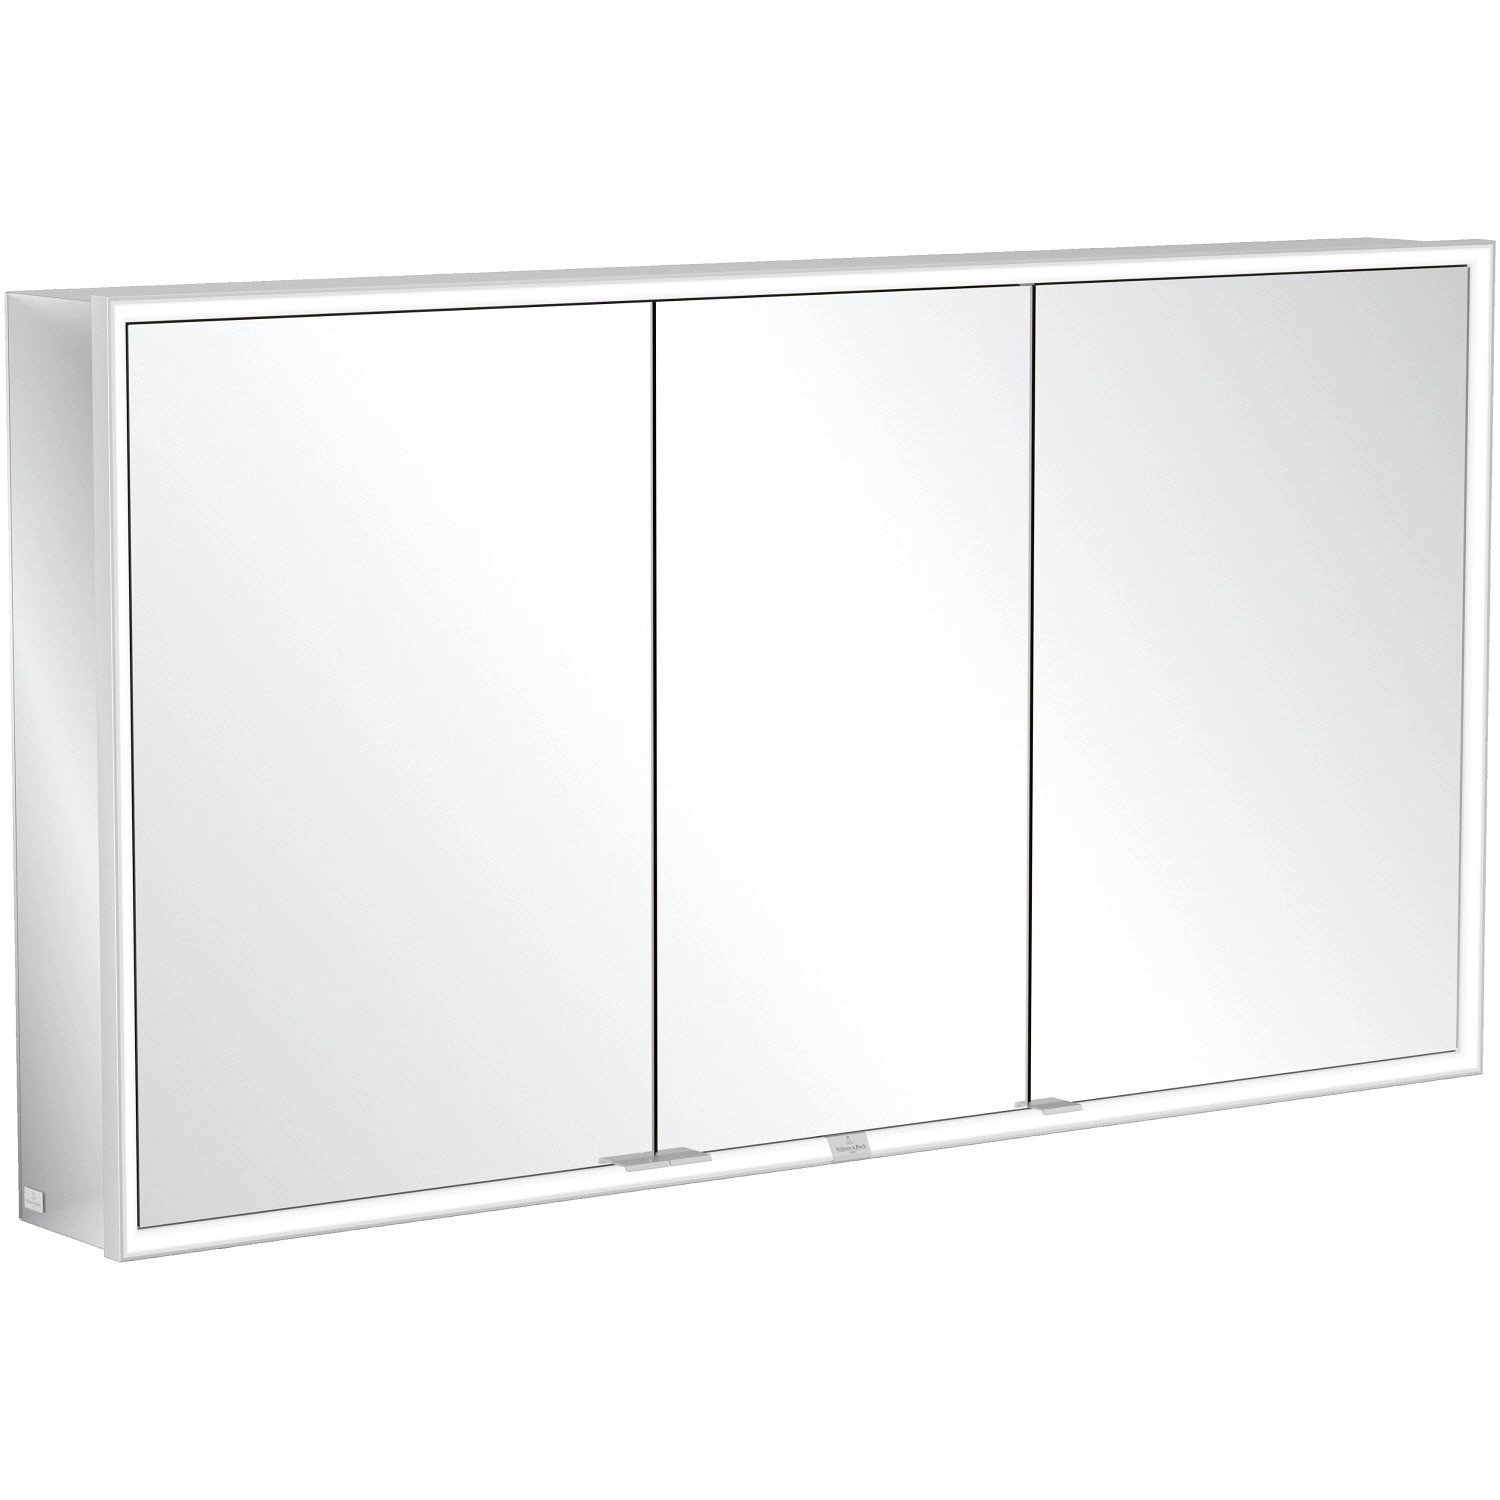 Villeroy & Boch Vorbau-Spiegelschrank 140 cm My View Now 3 Türen Smart Home